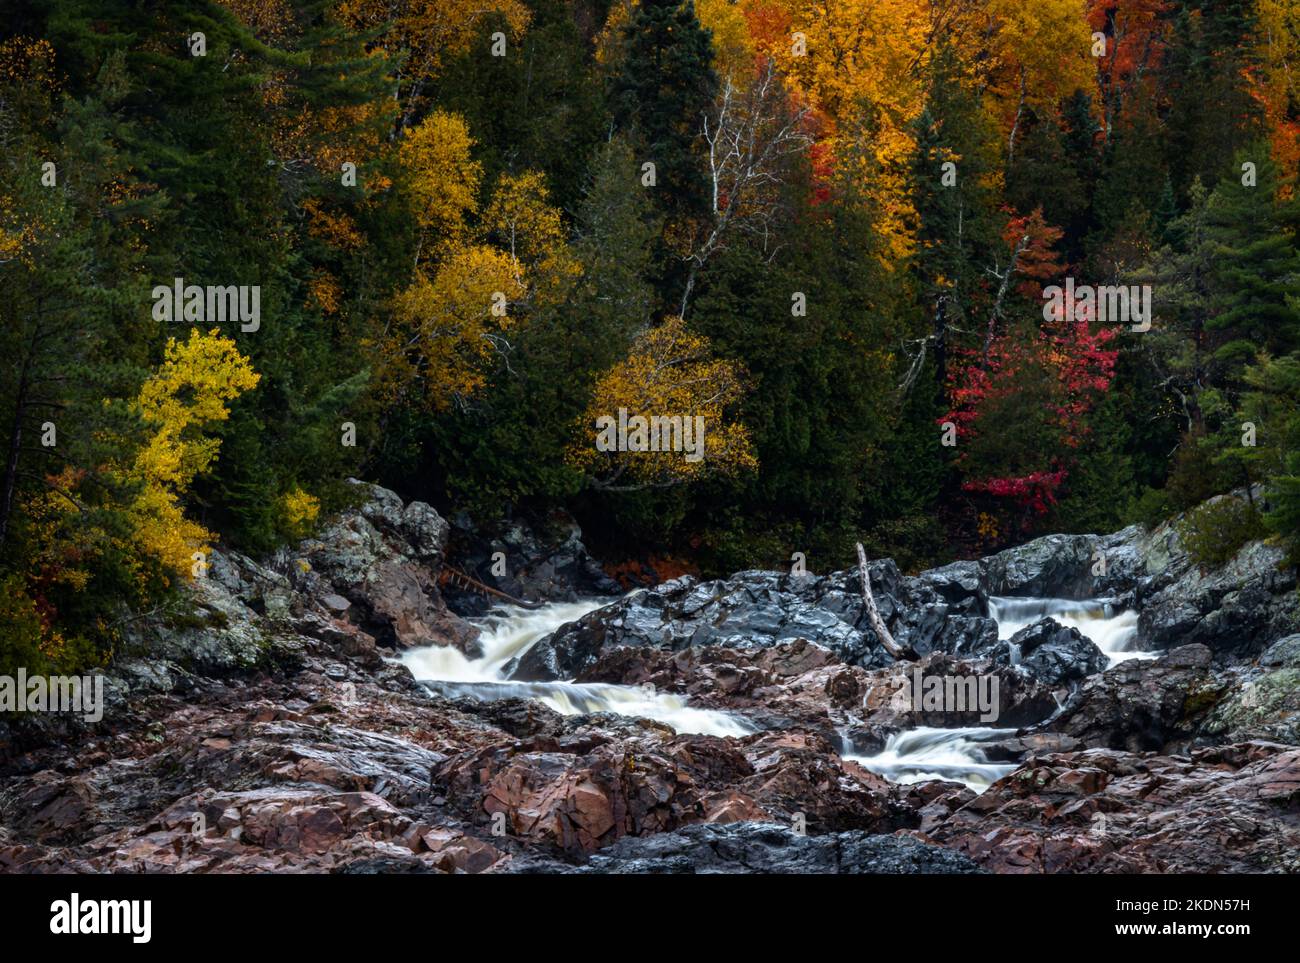 Ein Wasserfall stürzt sich in den borealen Waldfelsen, der von Bäumen mit leuchtenden Herbstfarben gesäumt ist. Stockfoto